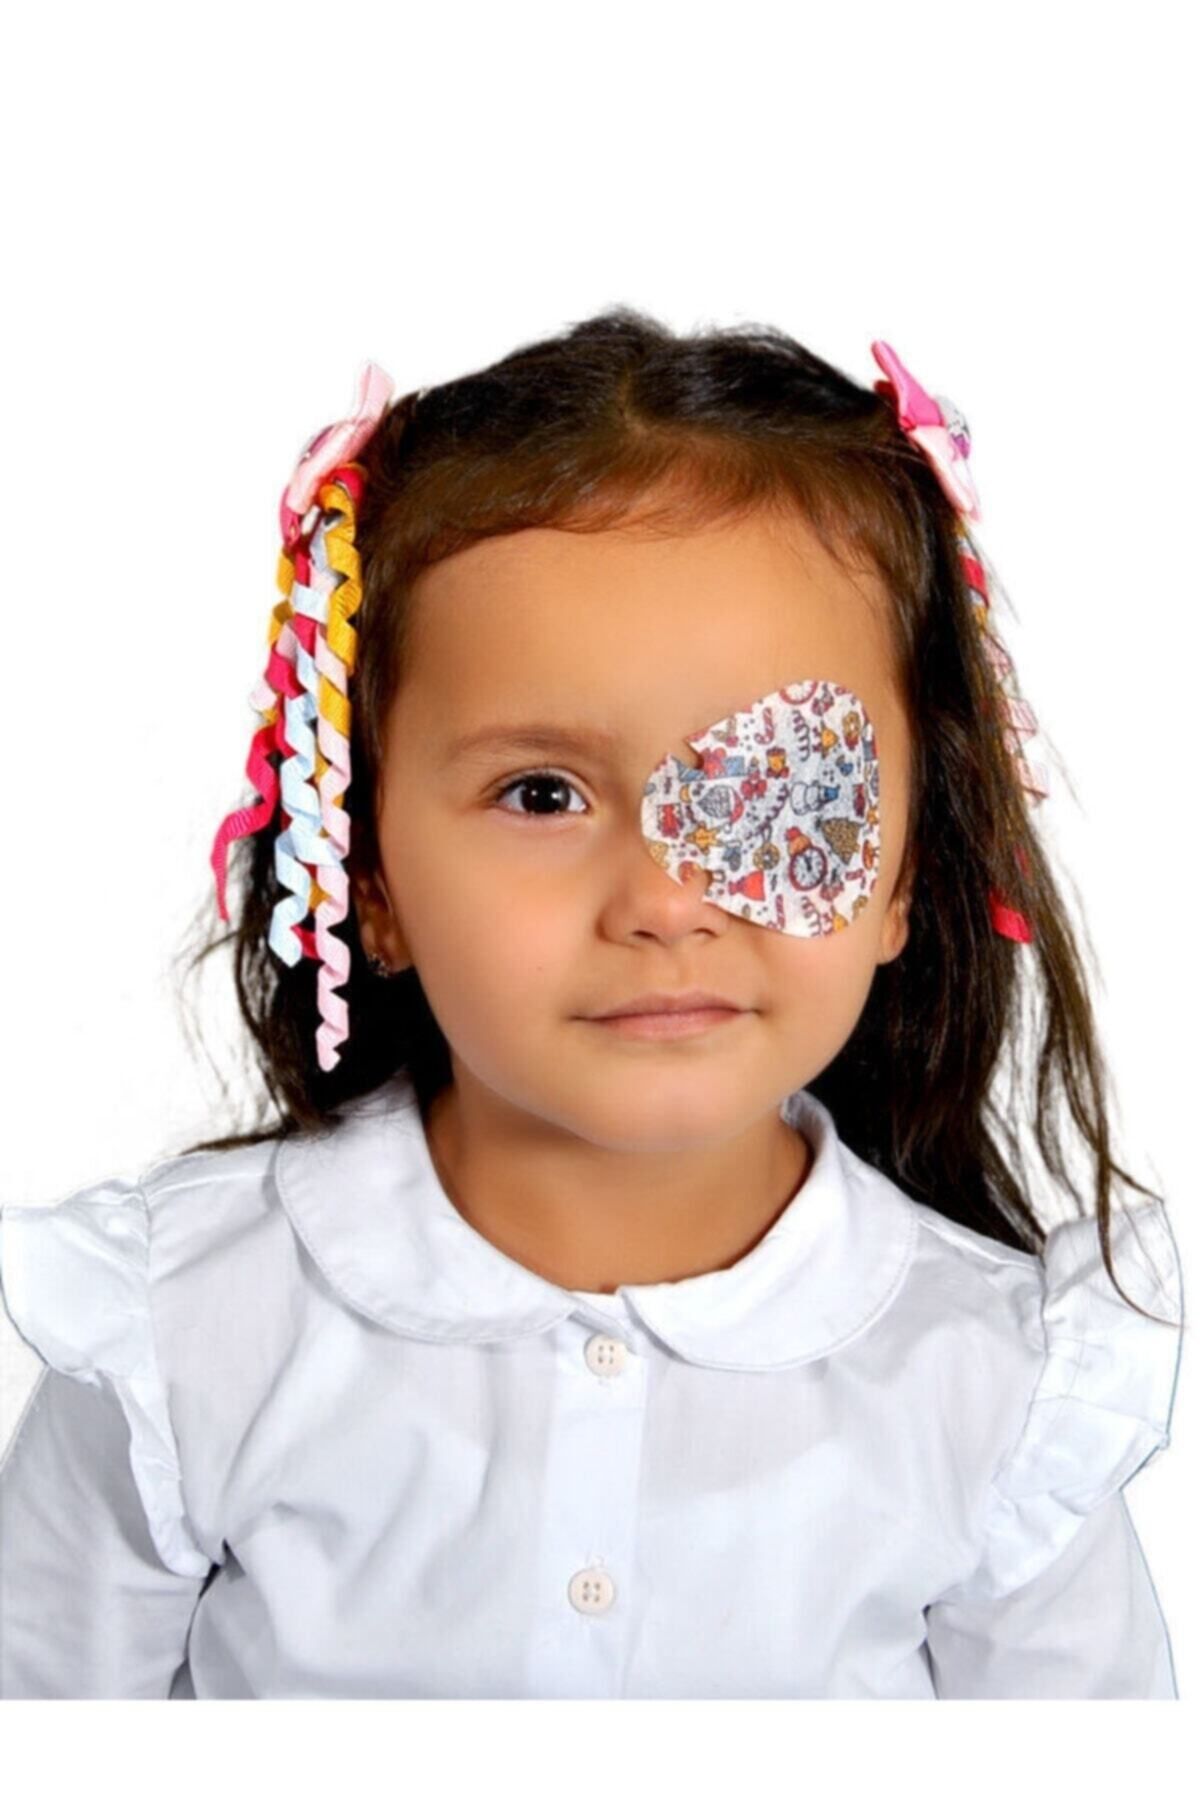 MEFKURE STORE Happy Eyes Çocuk Göz Kapama Bandı 100lük Kutu Göz Pedi